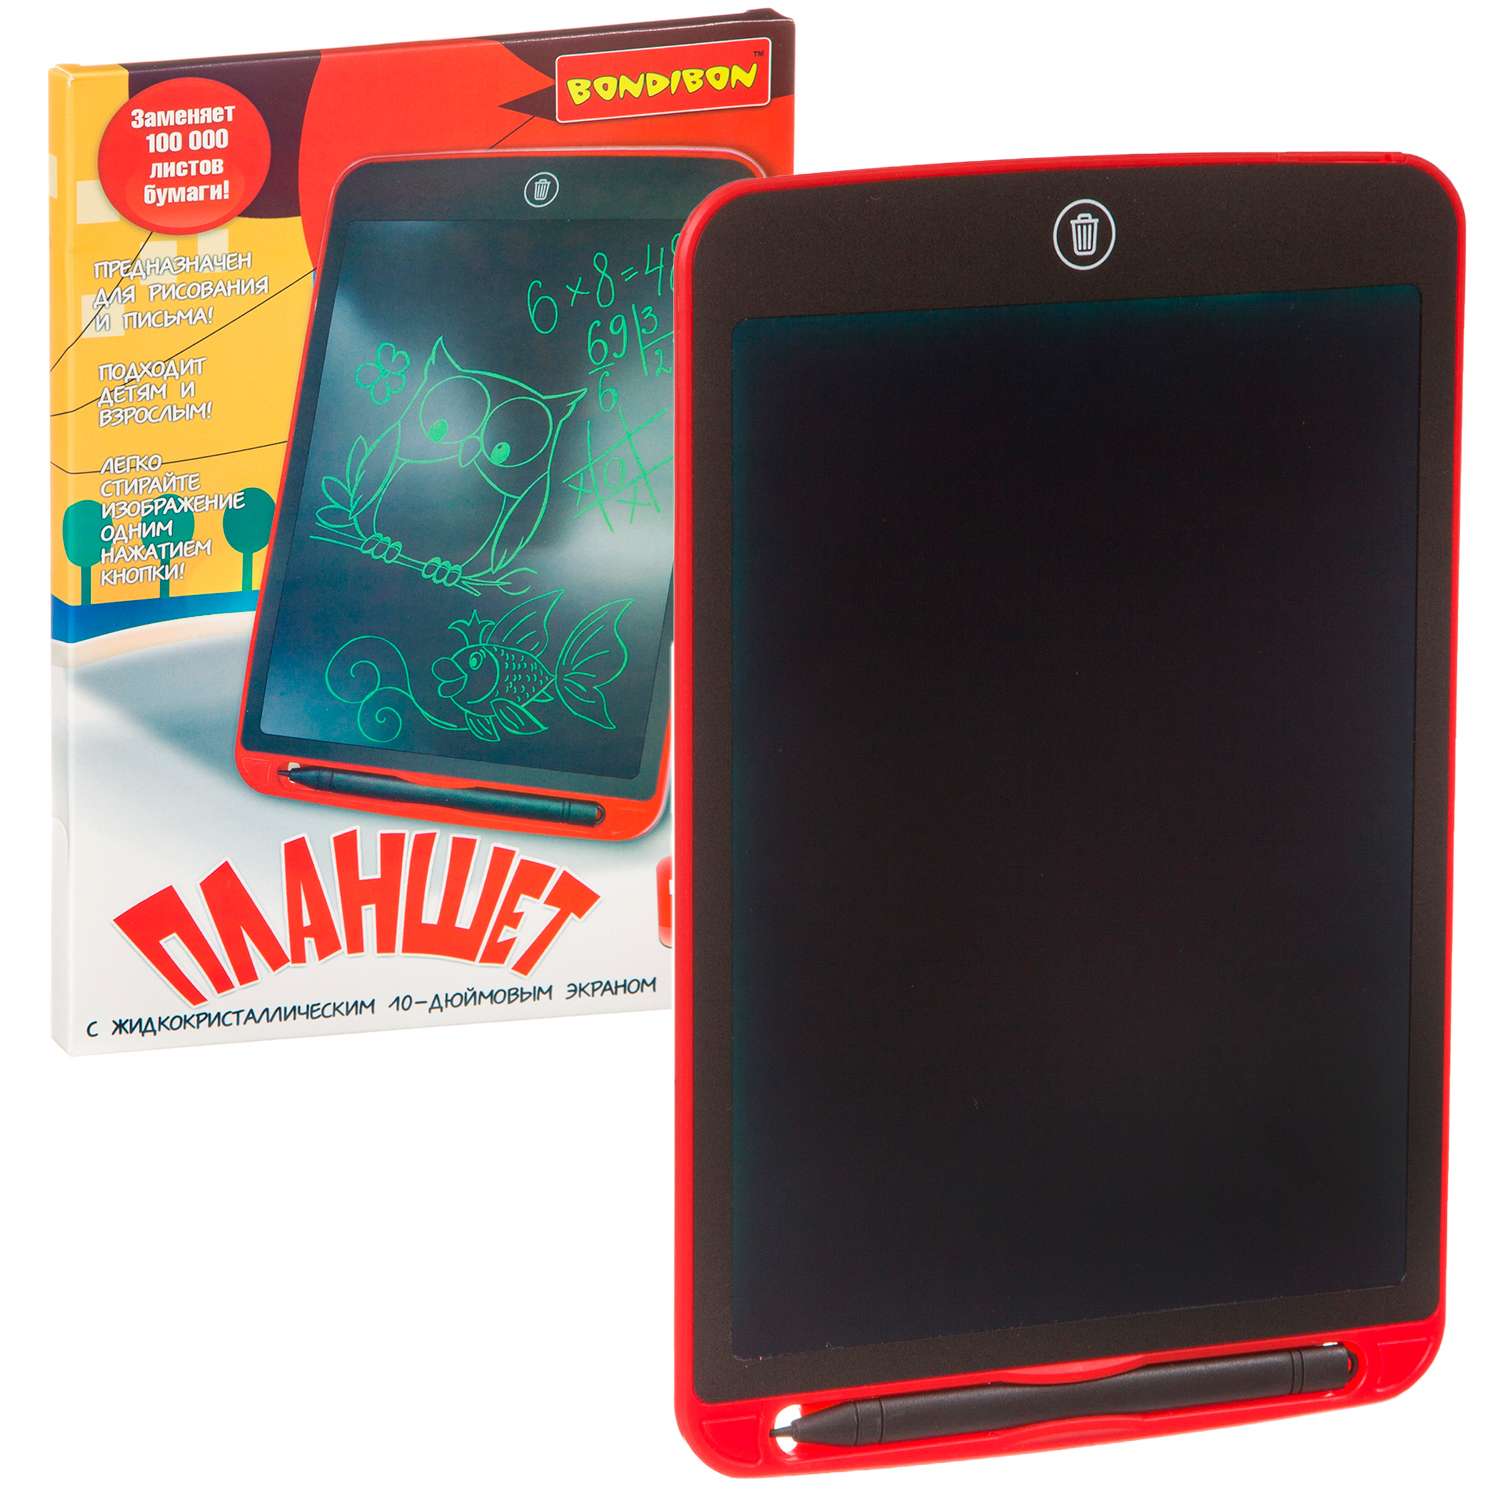 Развивающий планшет BONDIBON монохромный жидкокристаллический экран 10 дюймов красного цвета - фото 1